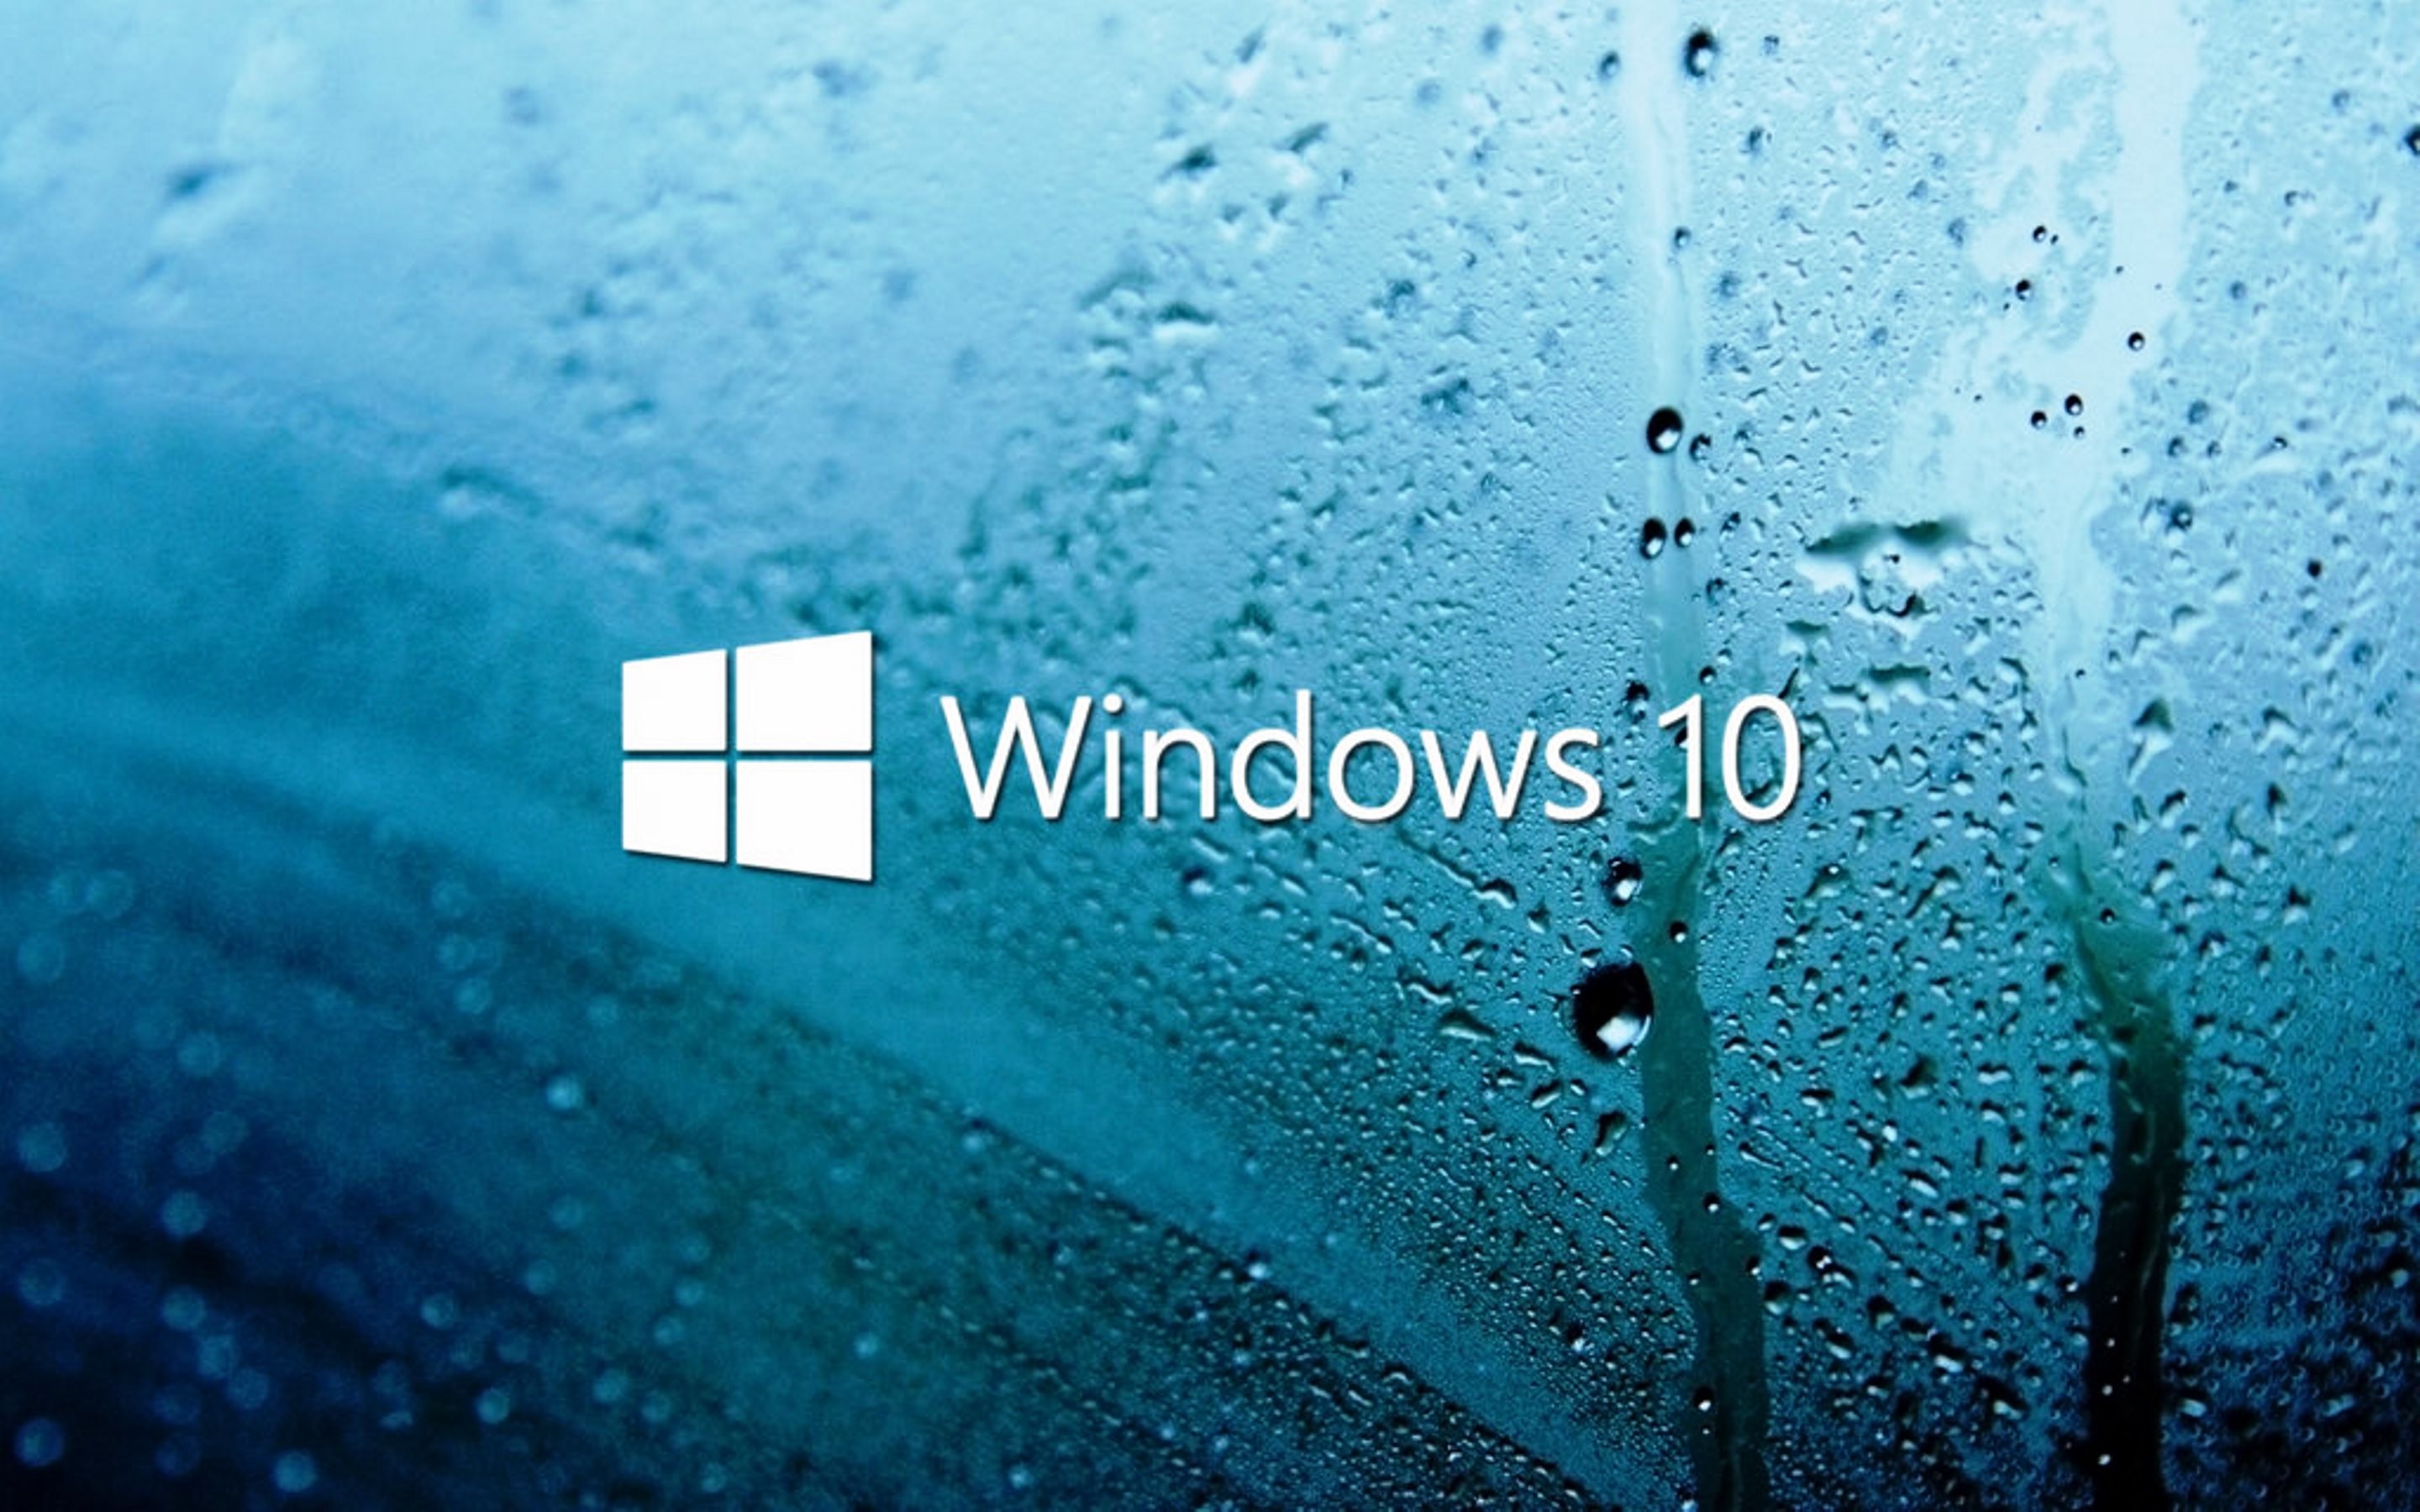 Đã đến lúc thay đổi hình nền desktop của bạn với bức ảnh nền Windows 10 tuyệt đẹp từ chúng tôi. Từ những viên kim cương lung linh đến những cánh hoa hồng đầy đam mê, hình nền Windows 10 này đem lại vẻ đẹp tự nhiên và sự tươi sáng cho màn hình của bạn. Đừng bỏ lỡ cơ hội để sở hữu bức ảnh nền Windows 10 này!